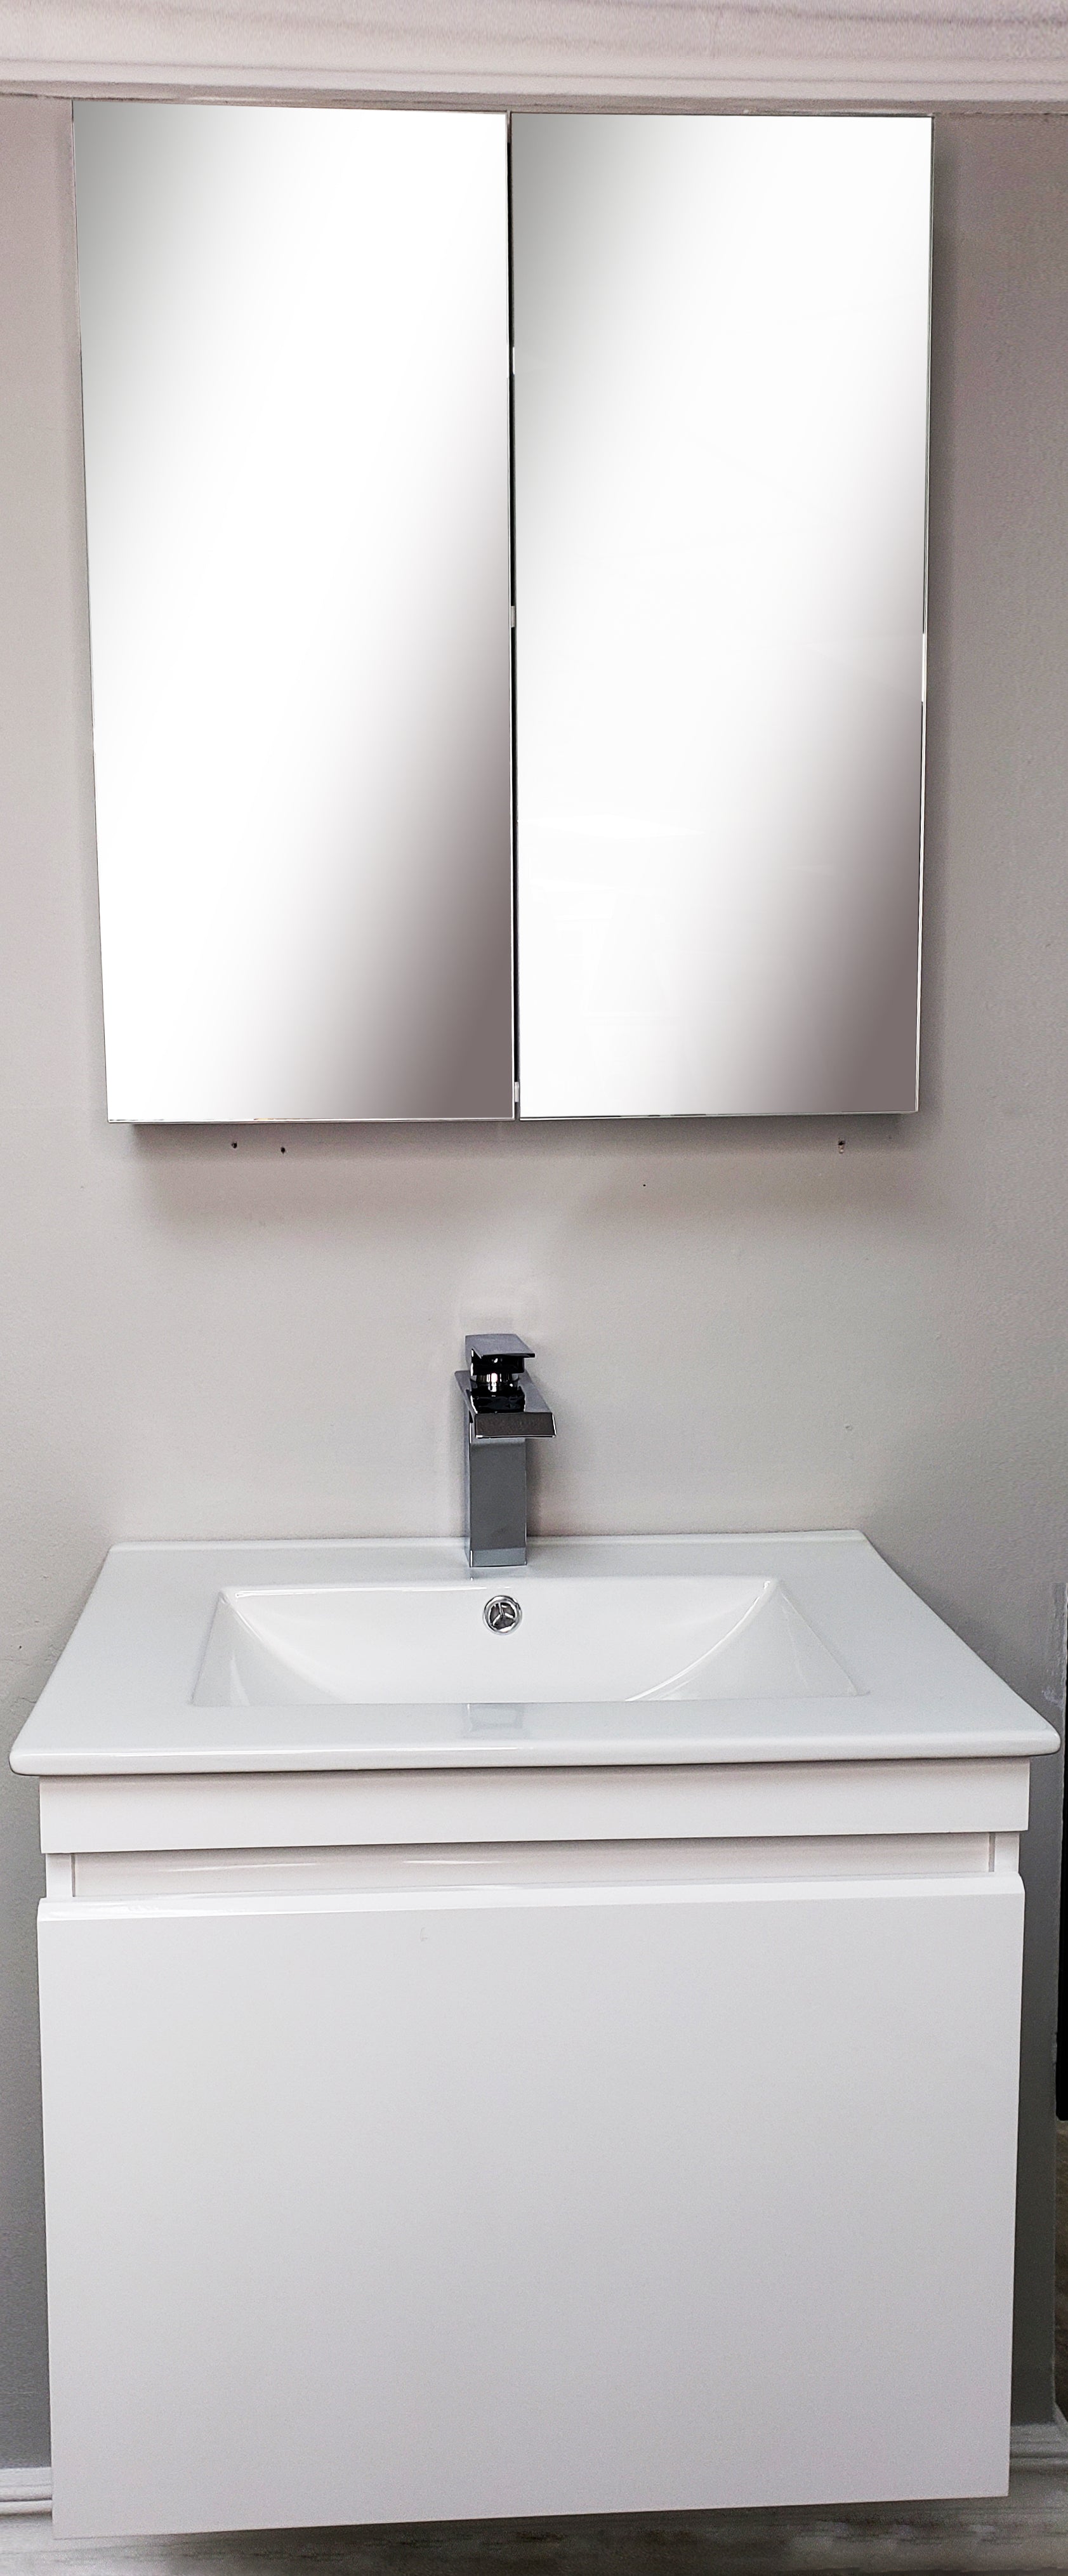  Mueble de baño estrecho de PVC para muebles de baño, 80,340.6  in. : Hogar y Cocina